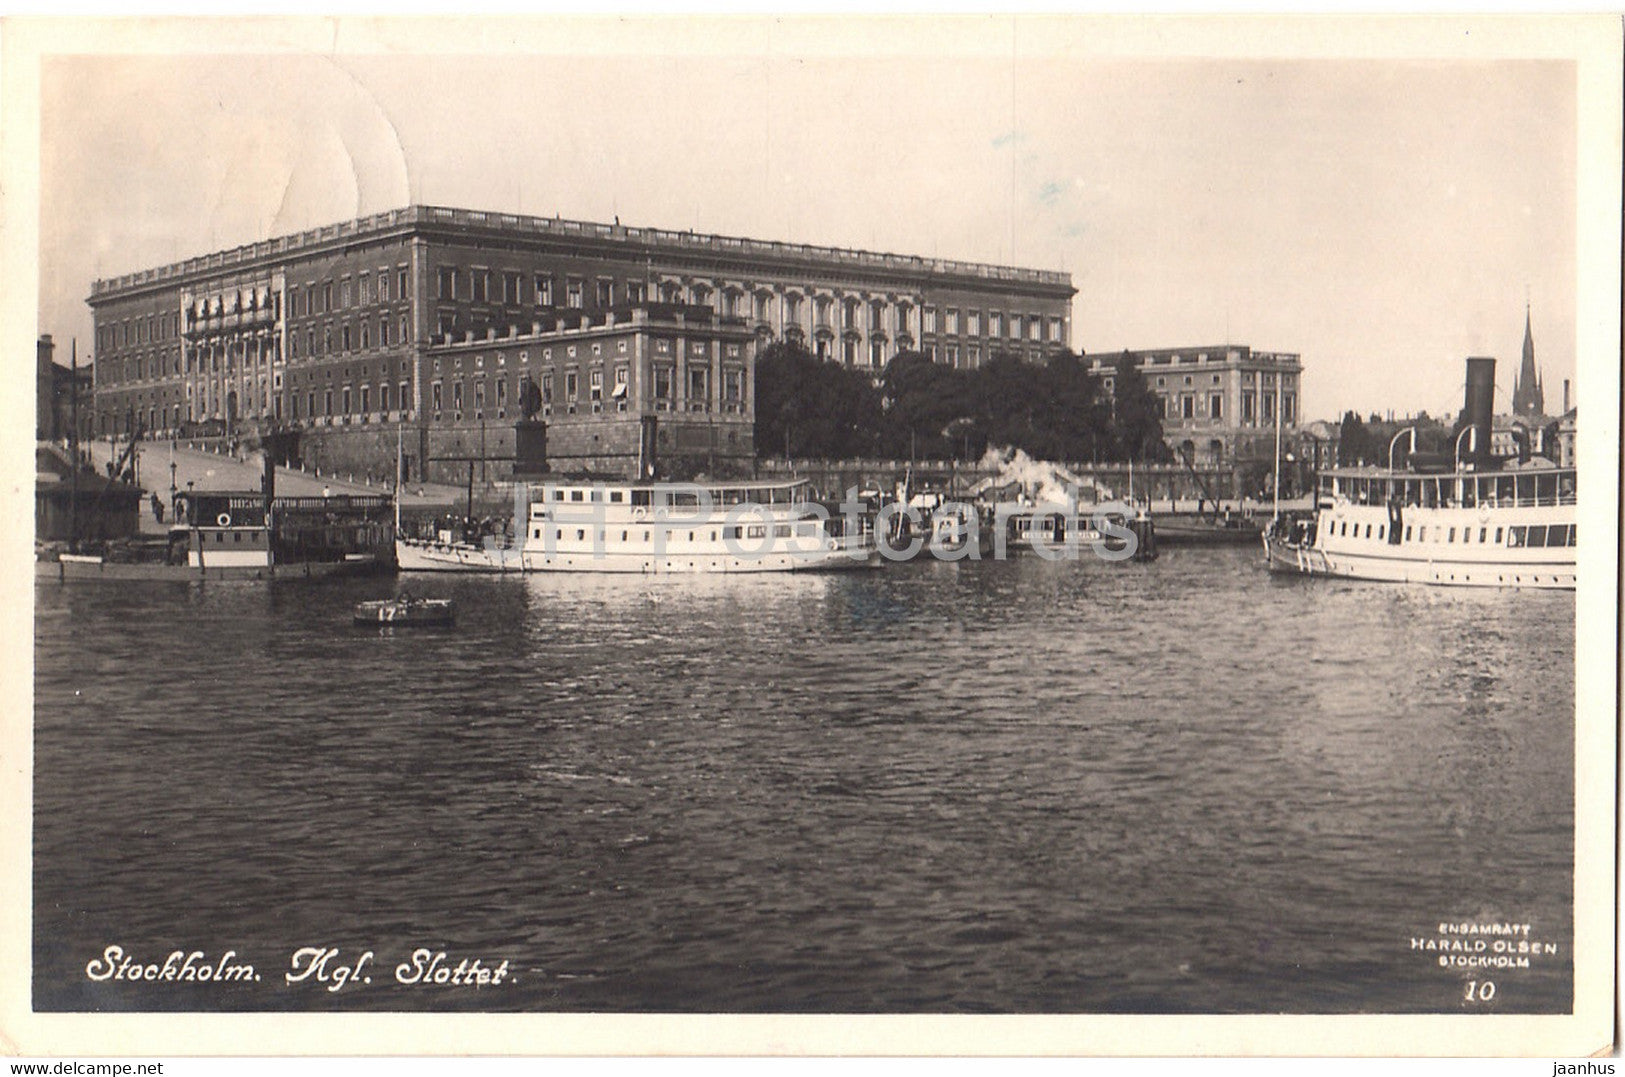 Stockholm - Kgl Slottet - castle - steamer boat - old postcard - 1927 - Sweden - used - JH Postcards